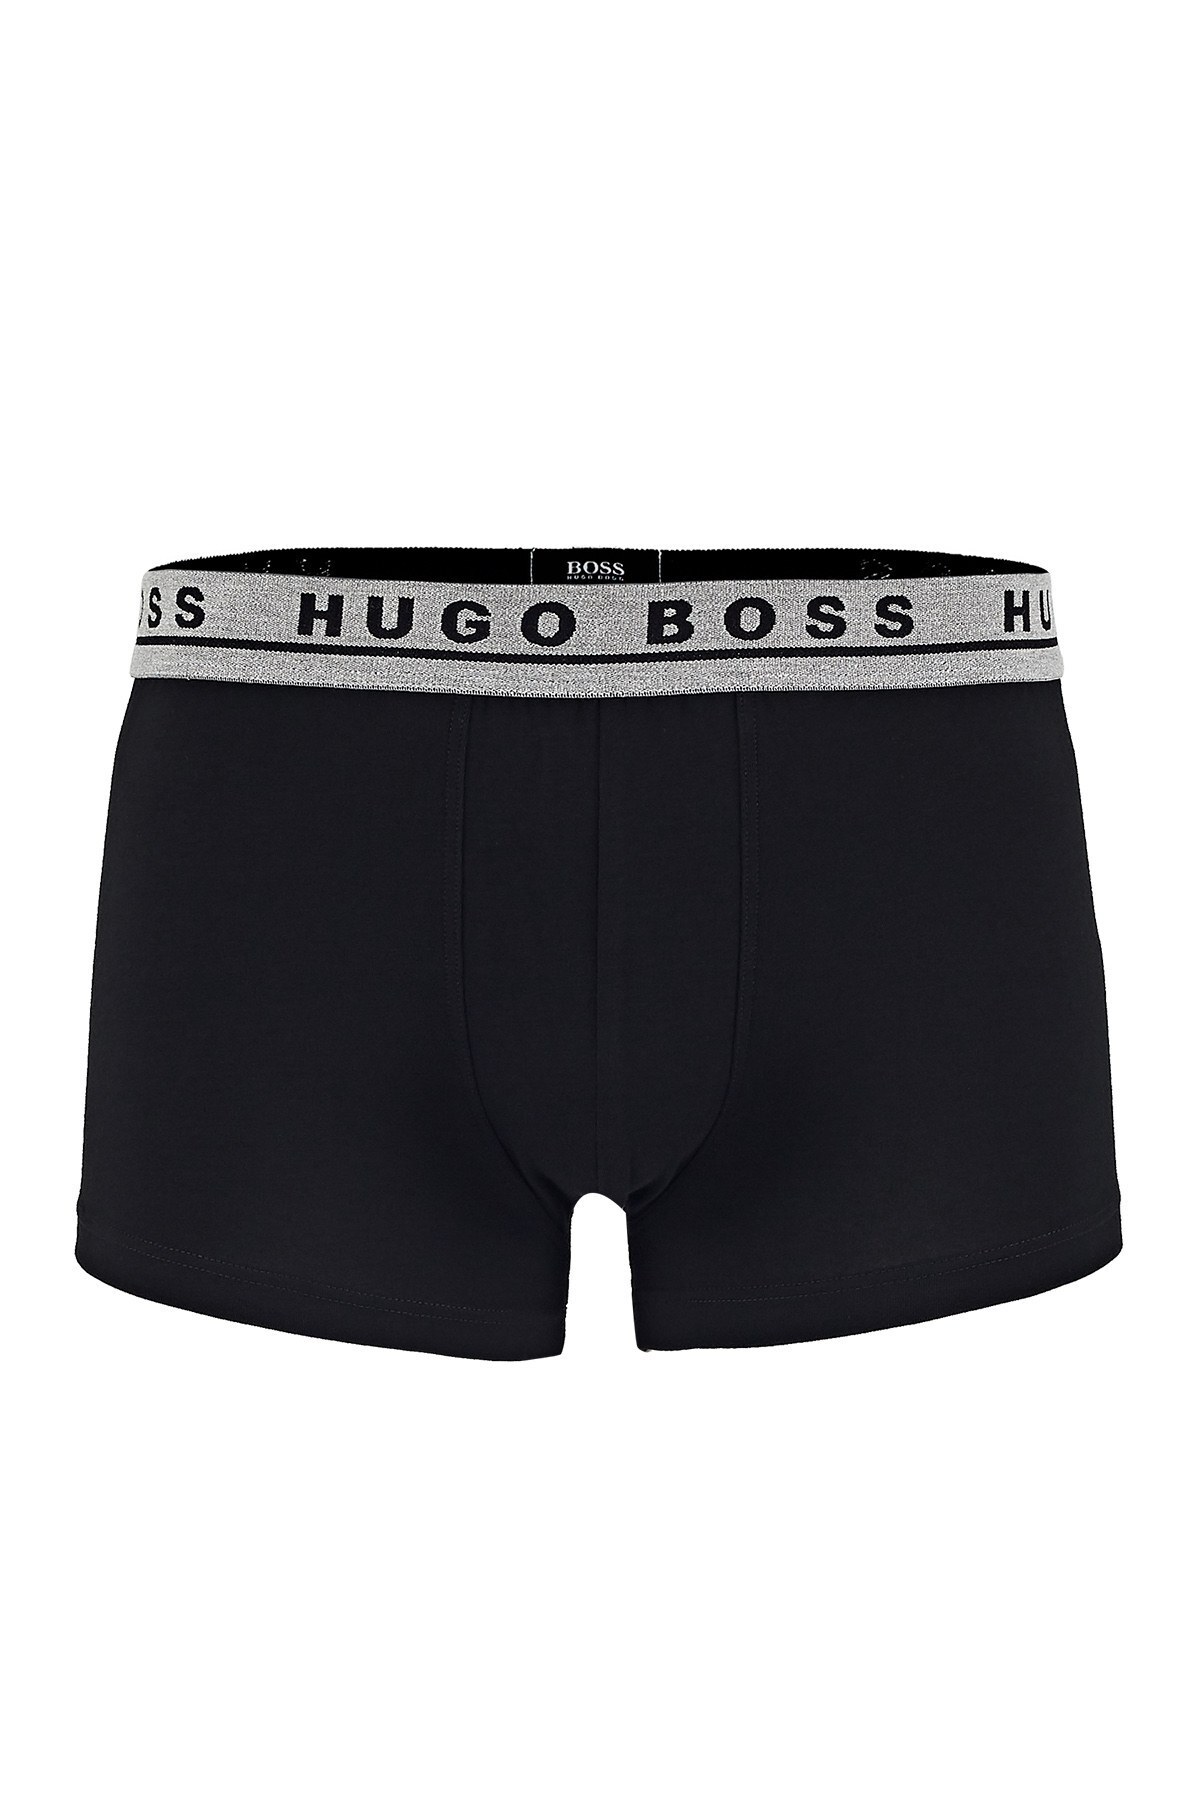 Hugo Boss Pamuklu 3 Pack Erkek Boxer 50438342 965 Siyah-Kırmızı-Gri